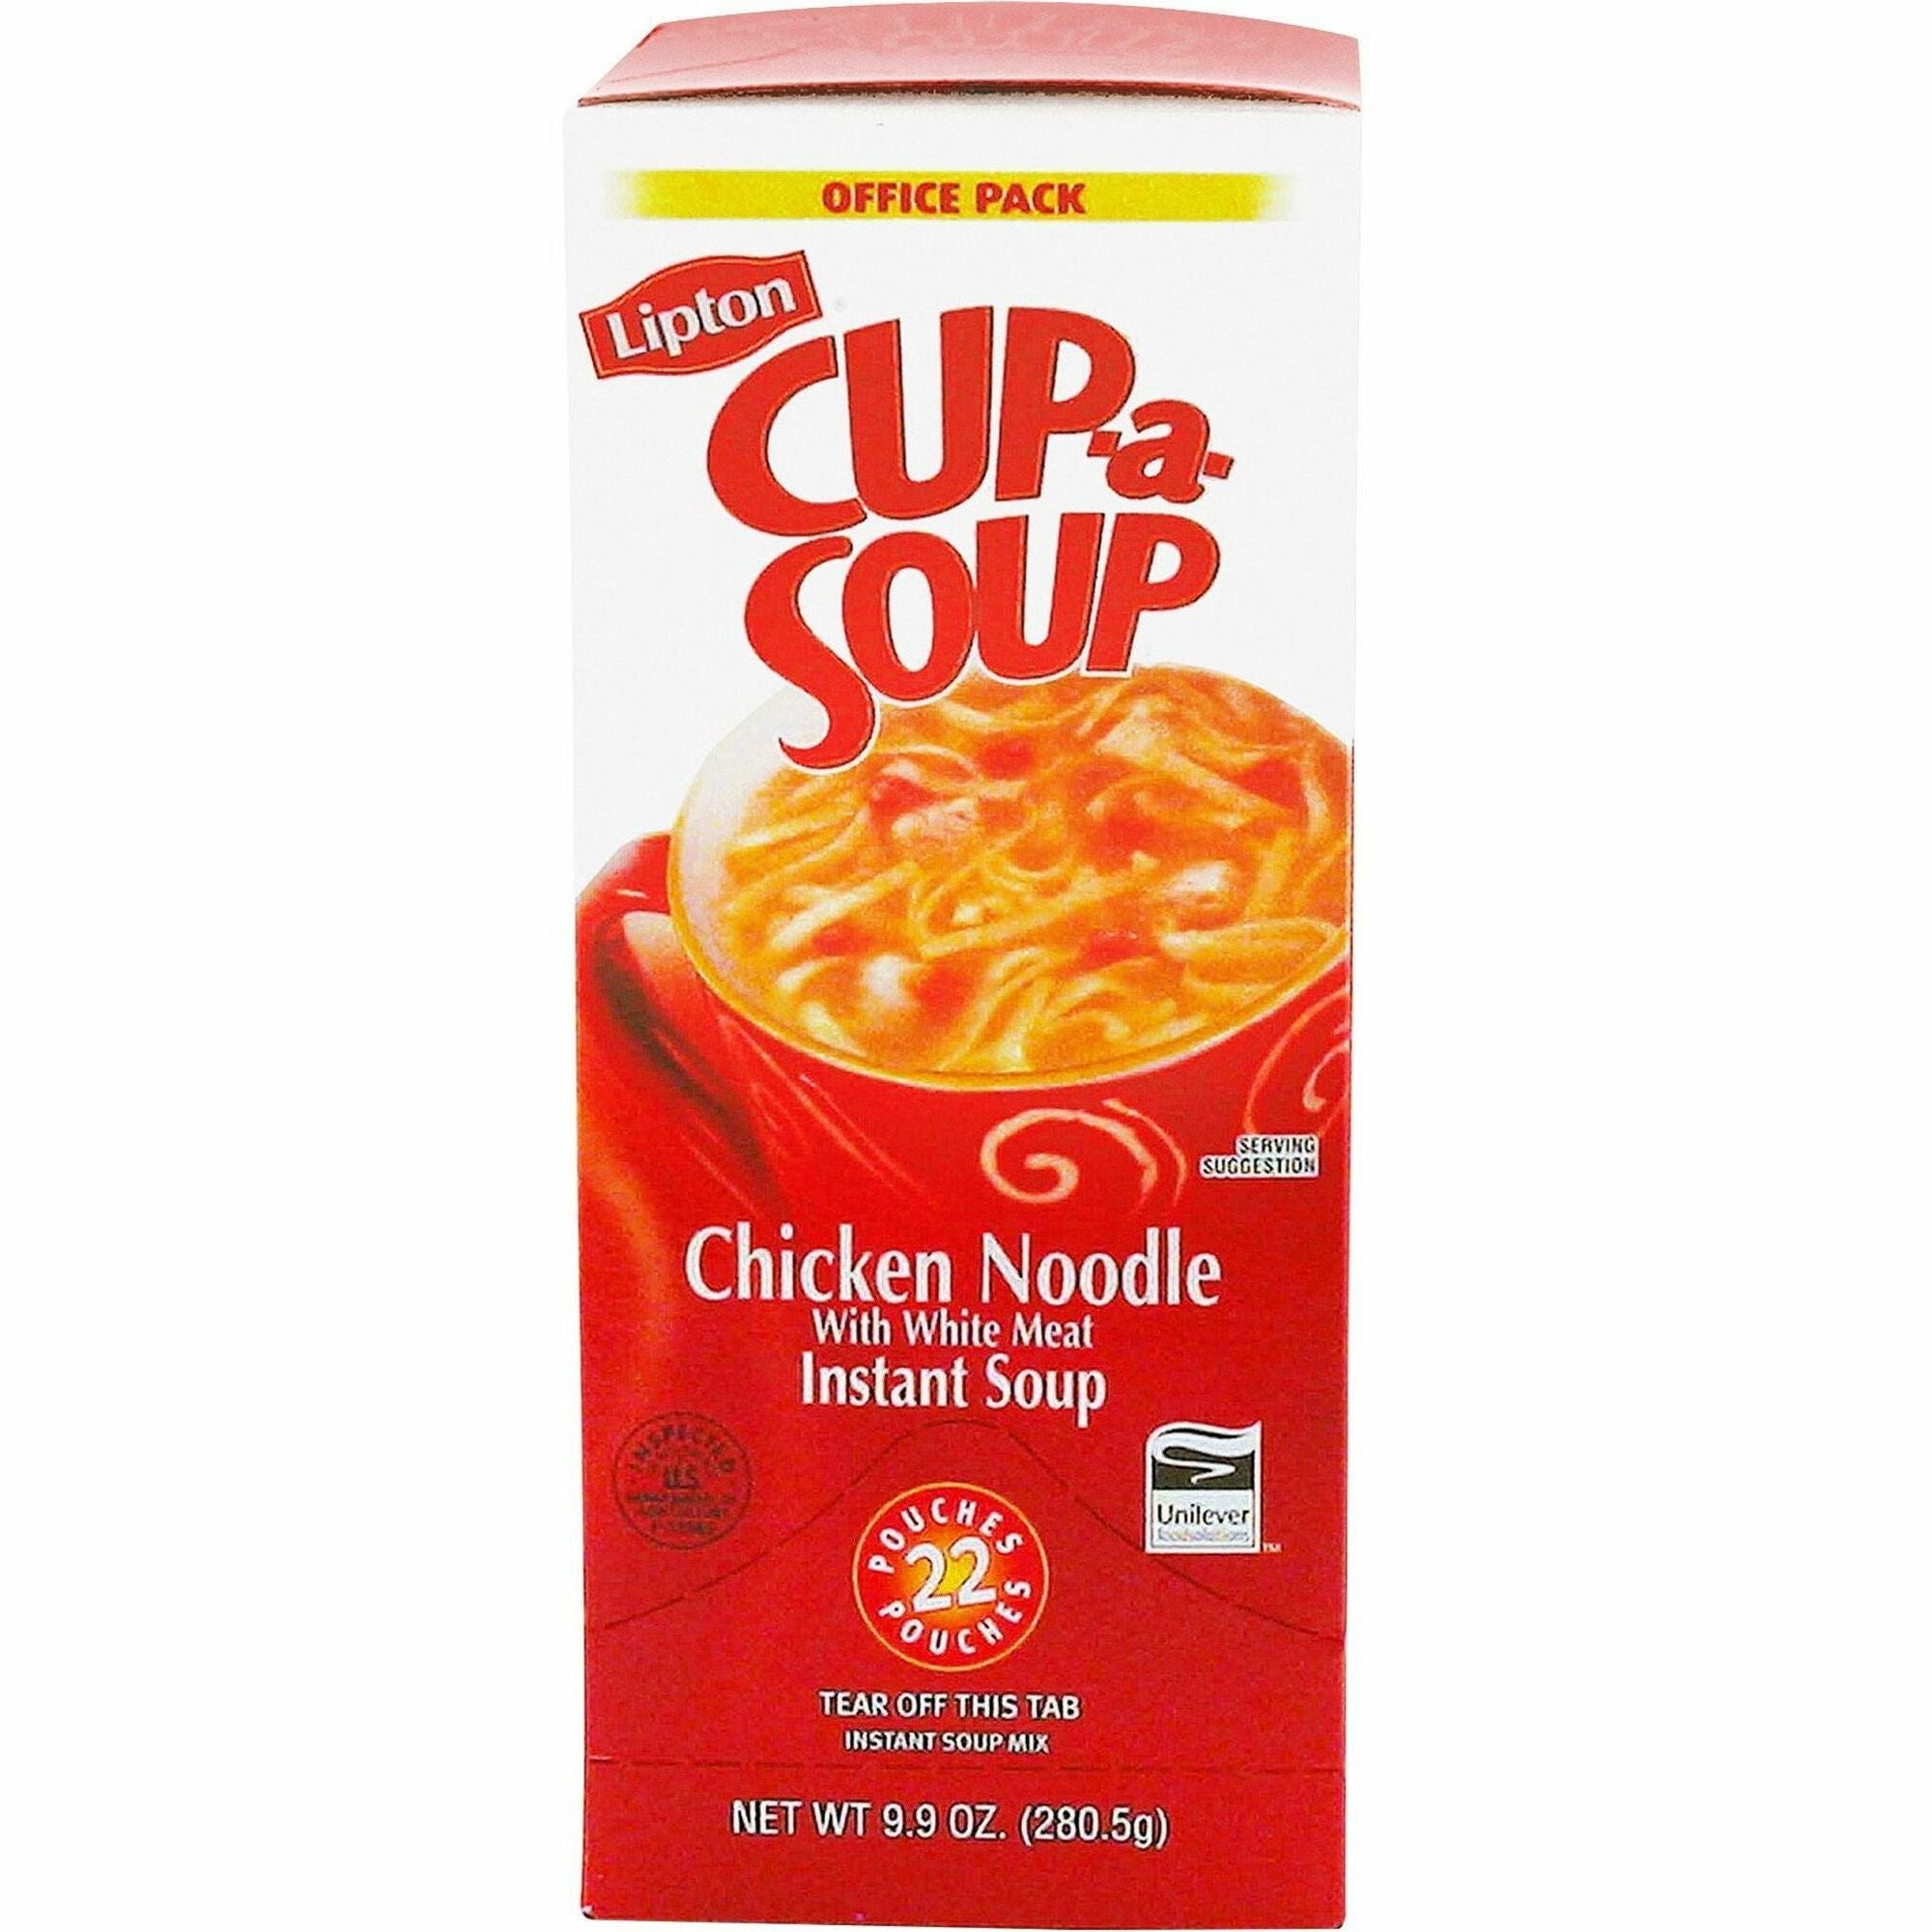 Lipton Cup-a-Soup Chicken Noodle Instant Soup - Low Calorie - Cup - 1 Serving Cup - 0.45 oz - 22 / Box - 